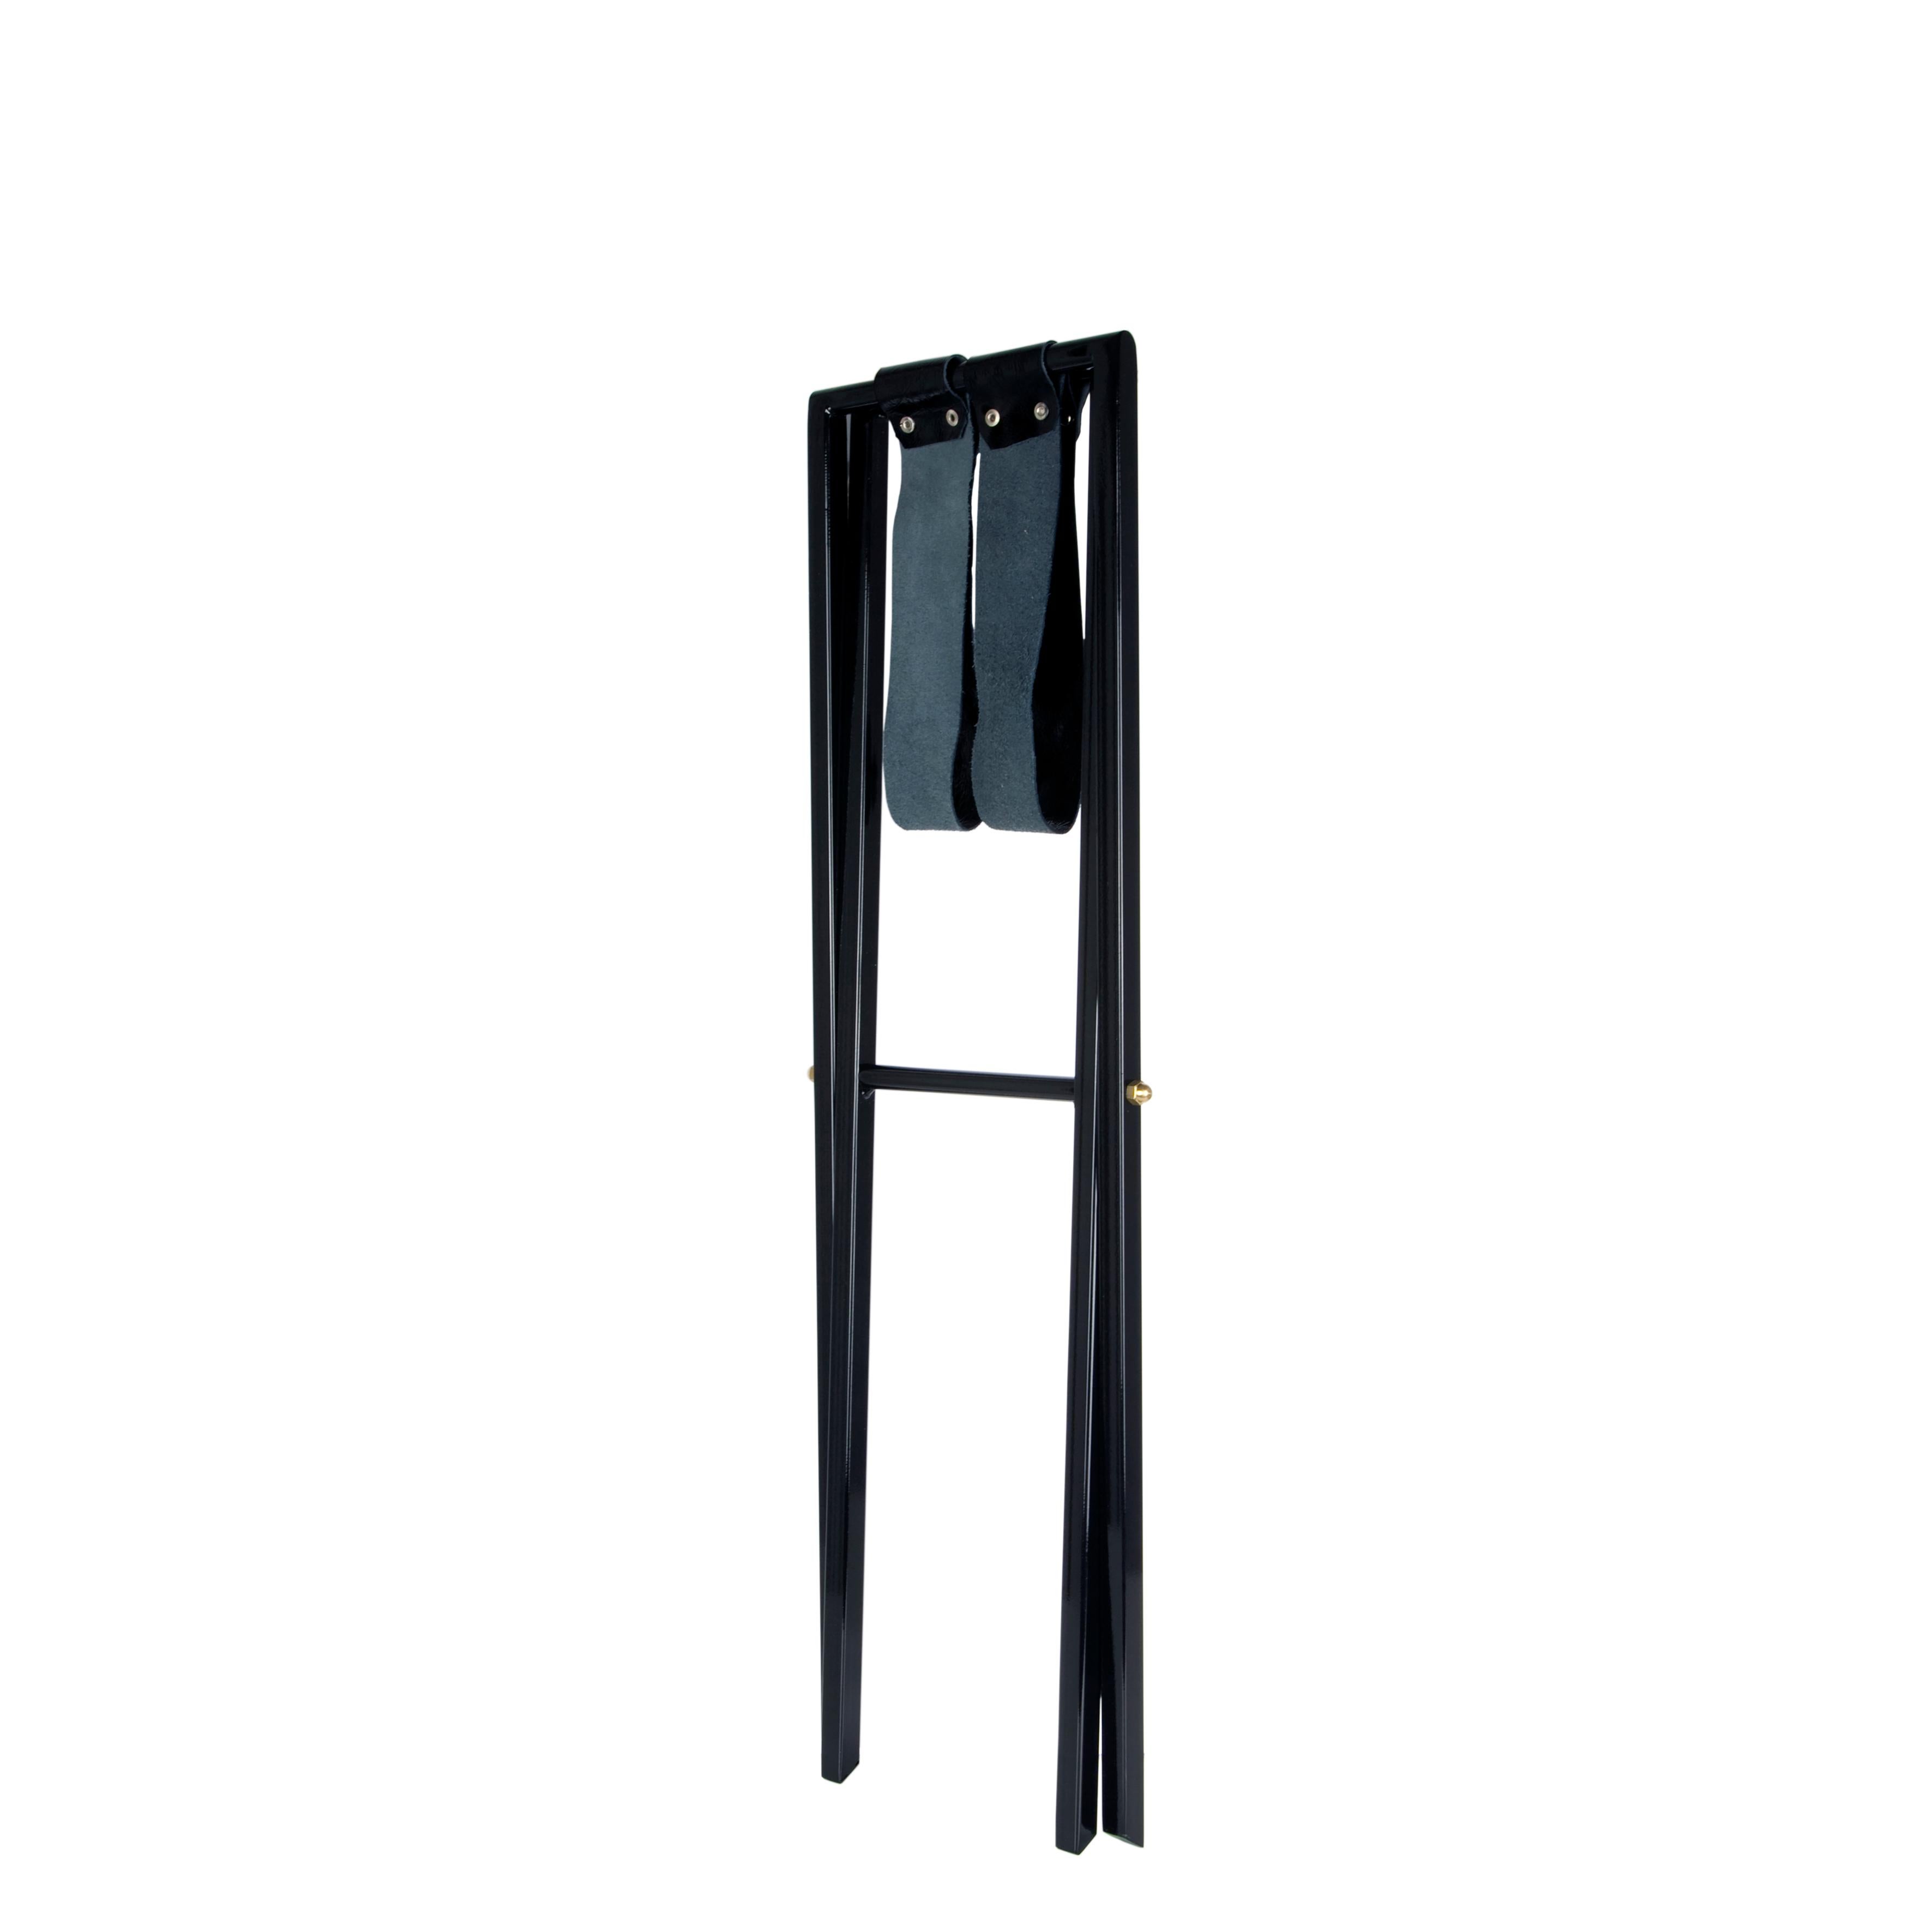 Les plateaux Fornasetti deviennent d'élégantes tables basses en ajoutant cette base en bois noir. Convient à un plateau en bois de 25 x 60 cm.

L'image montre le plateau sur son support (le plateau n'est pas inclus dans le prix).